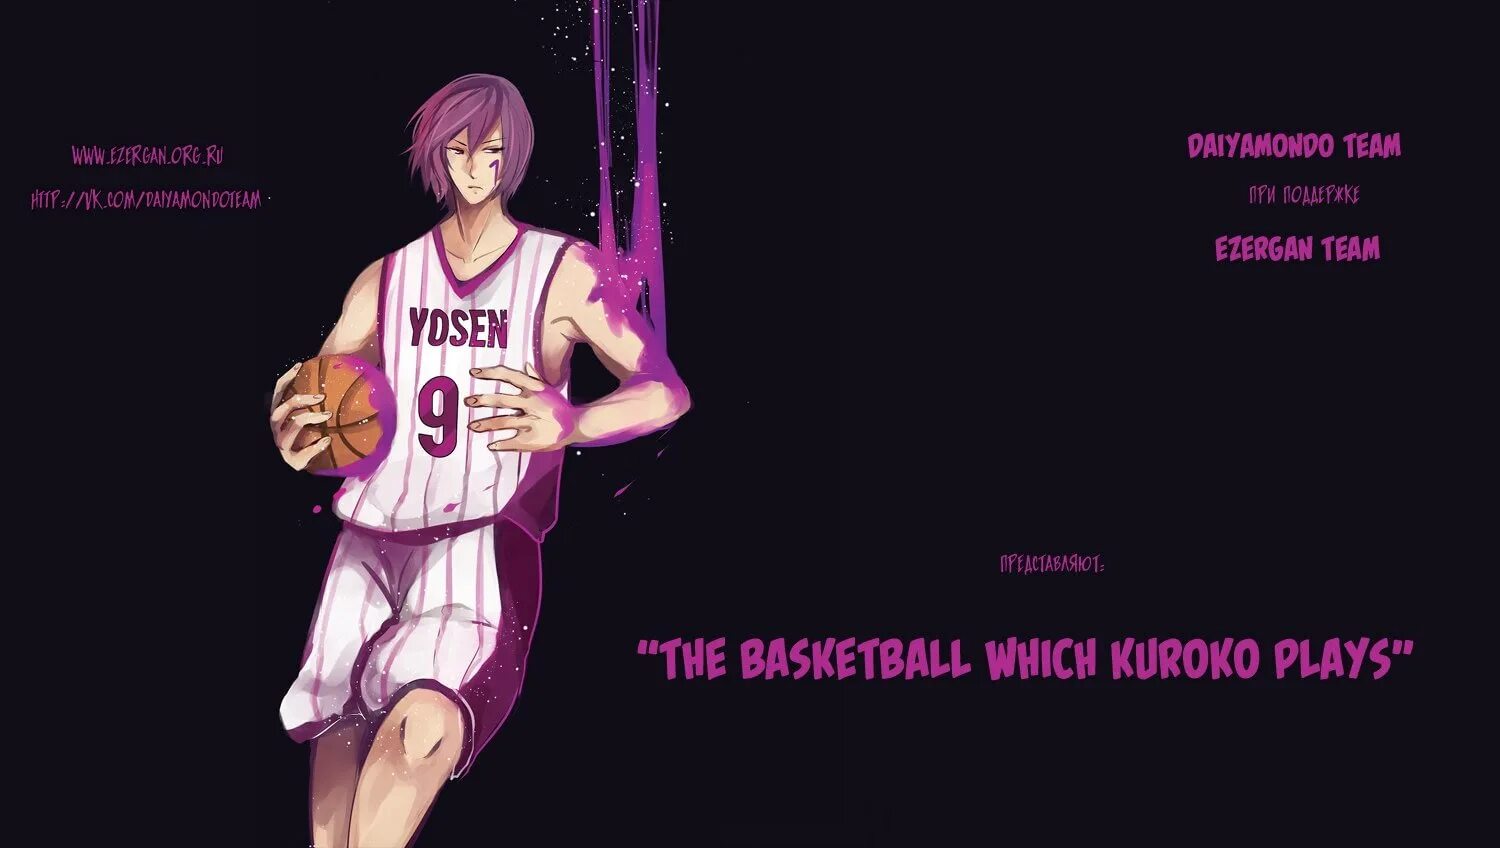 Имена персонажей куроко. Баскетбол Куроко персонажи персонажи. Имена персонажей баскетлкуроко. Баскетбол Куроко Манга Мурасакибара. Рост персонажей баскетбол Куроко.